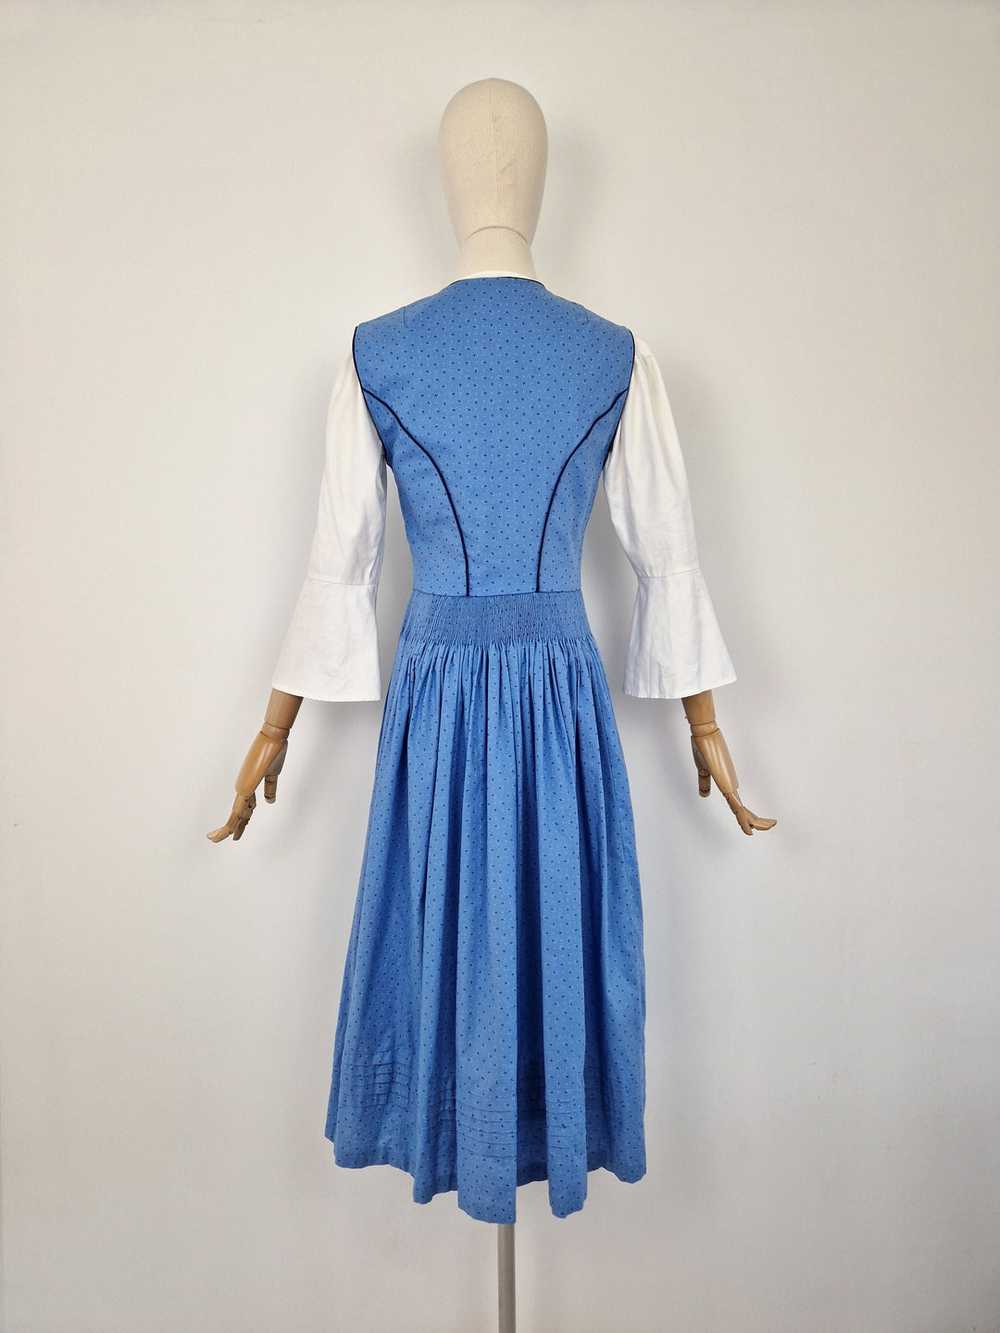 Vintage blue dirndl dress - image 6